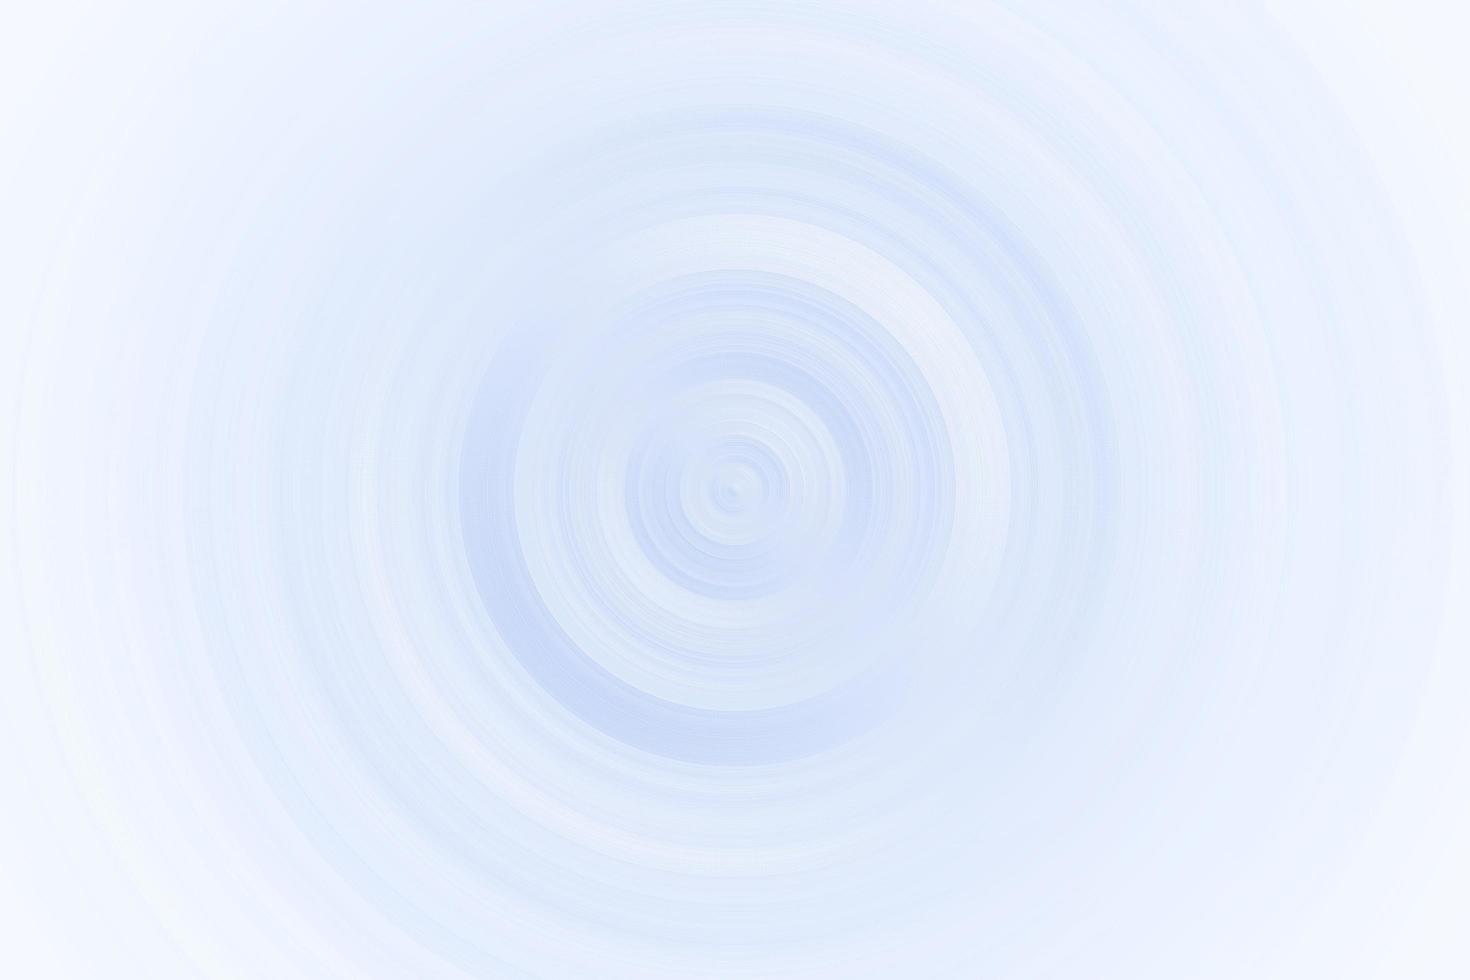 vortice azzurro astratto su sfondo bianco, texture di sfondo morbida foto